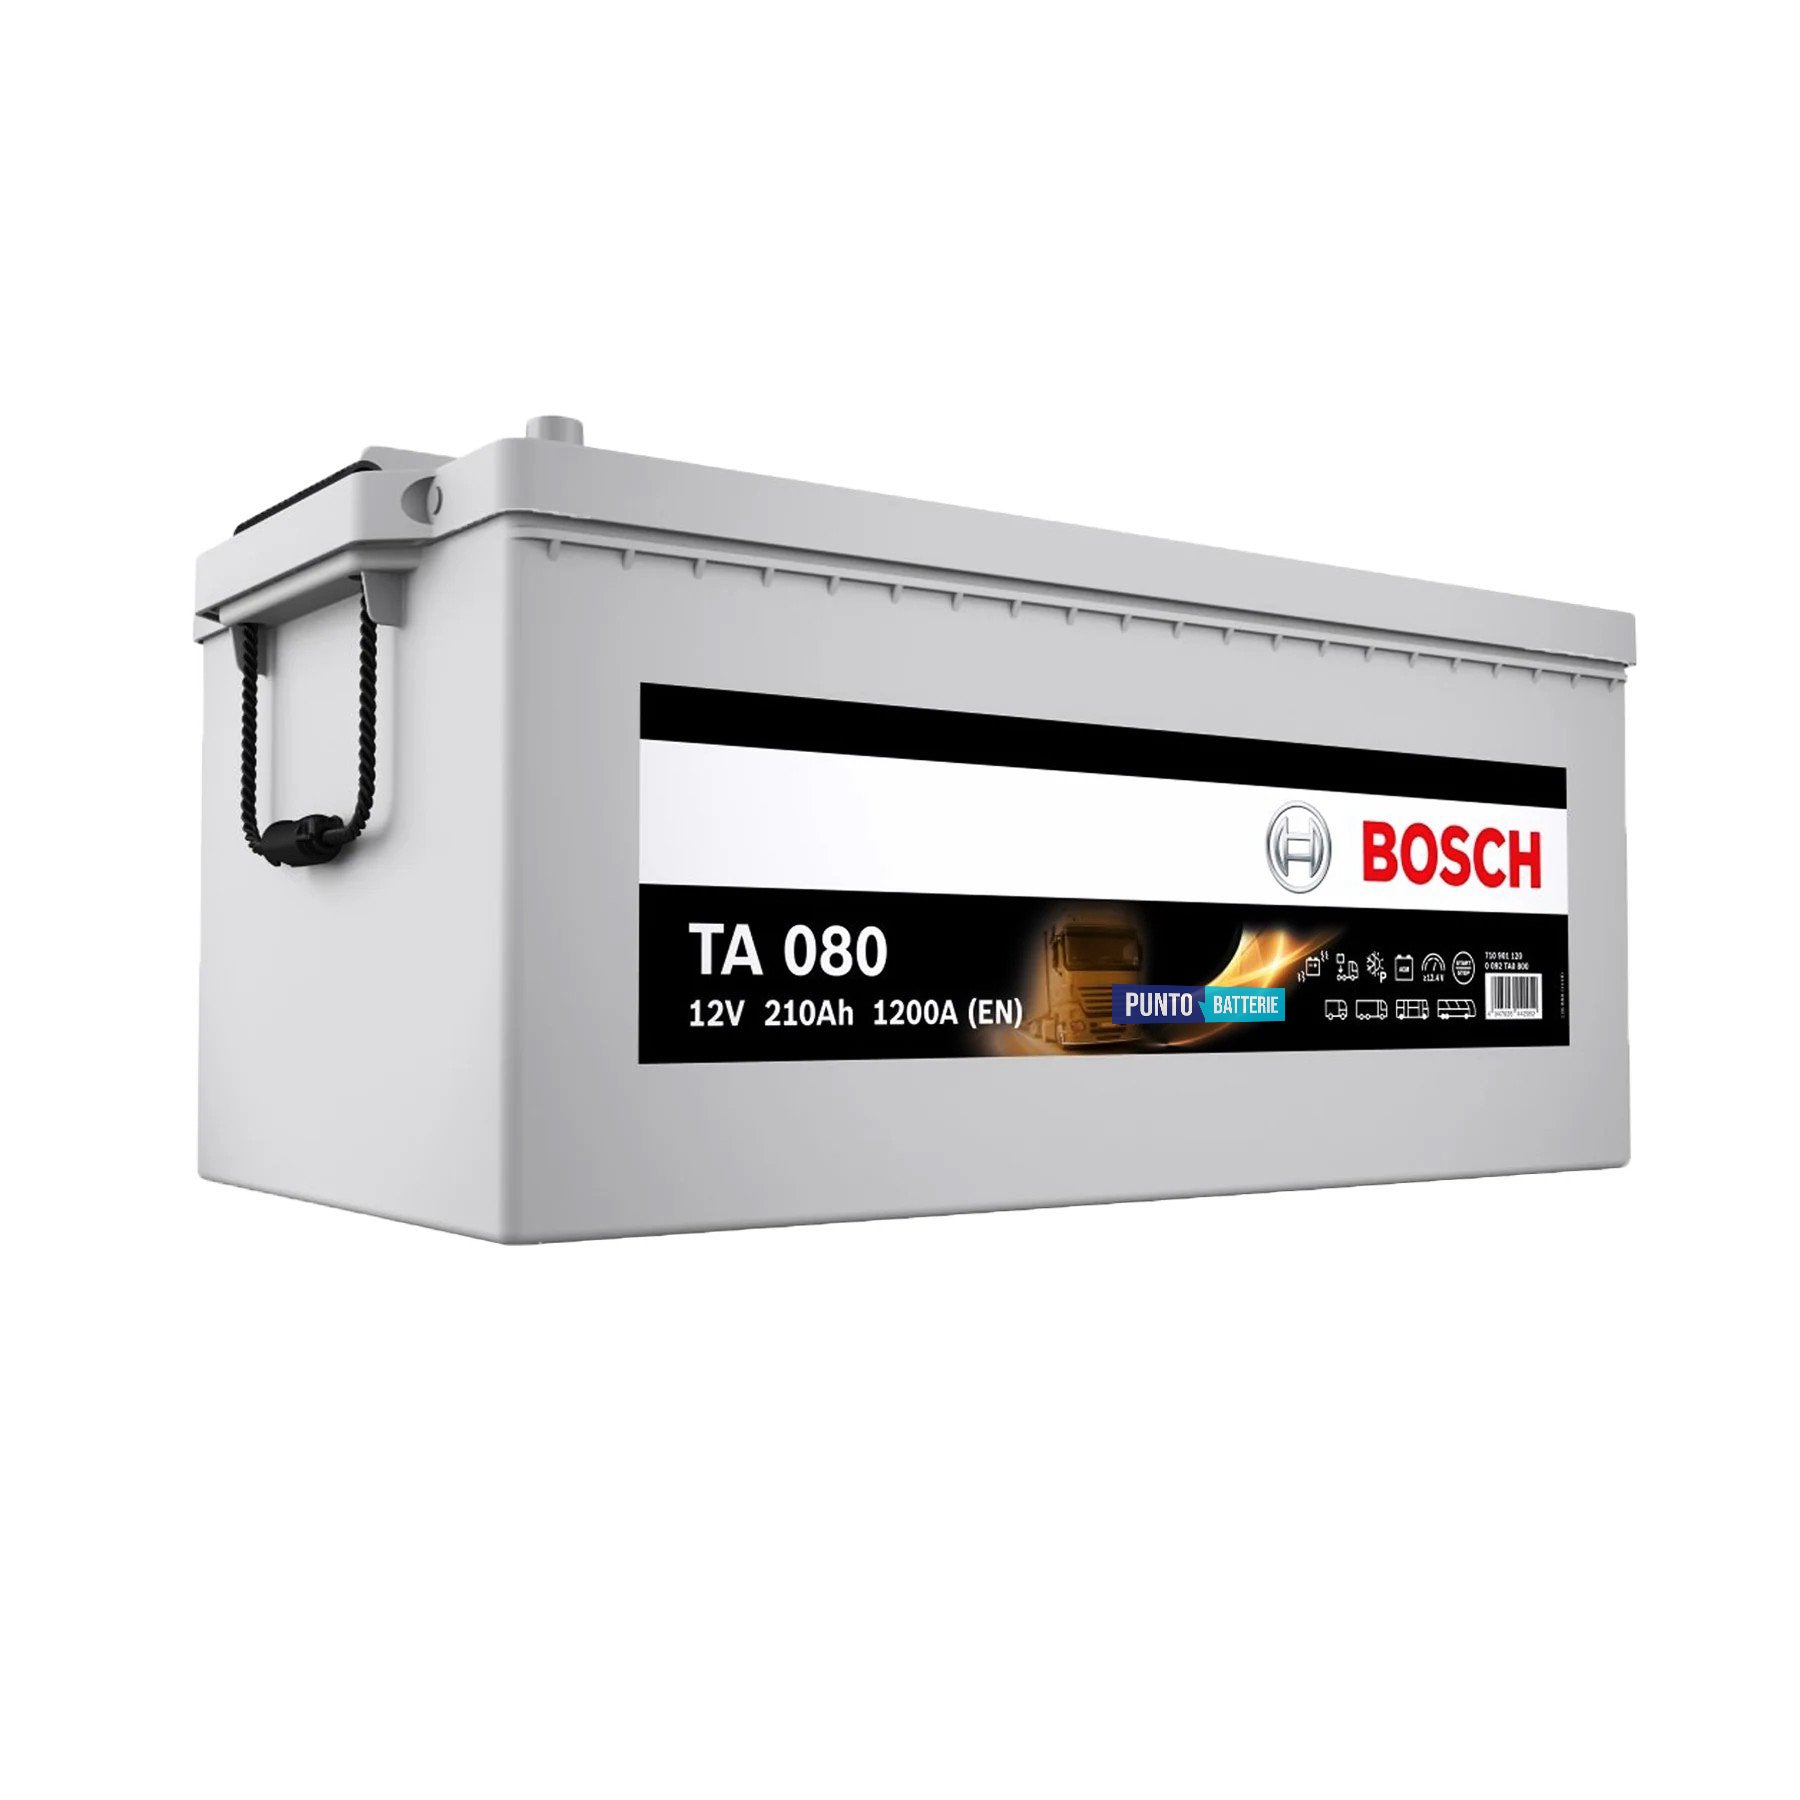 Batteria originale Bosch TA TA080, dimensioni 518 x 276 x 242, polo positivo a sinistra, 12 volt, 210 amperora, 1200 ampere, AGM. Batteria per camion e veicoli pesanti.